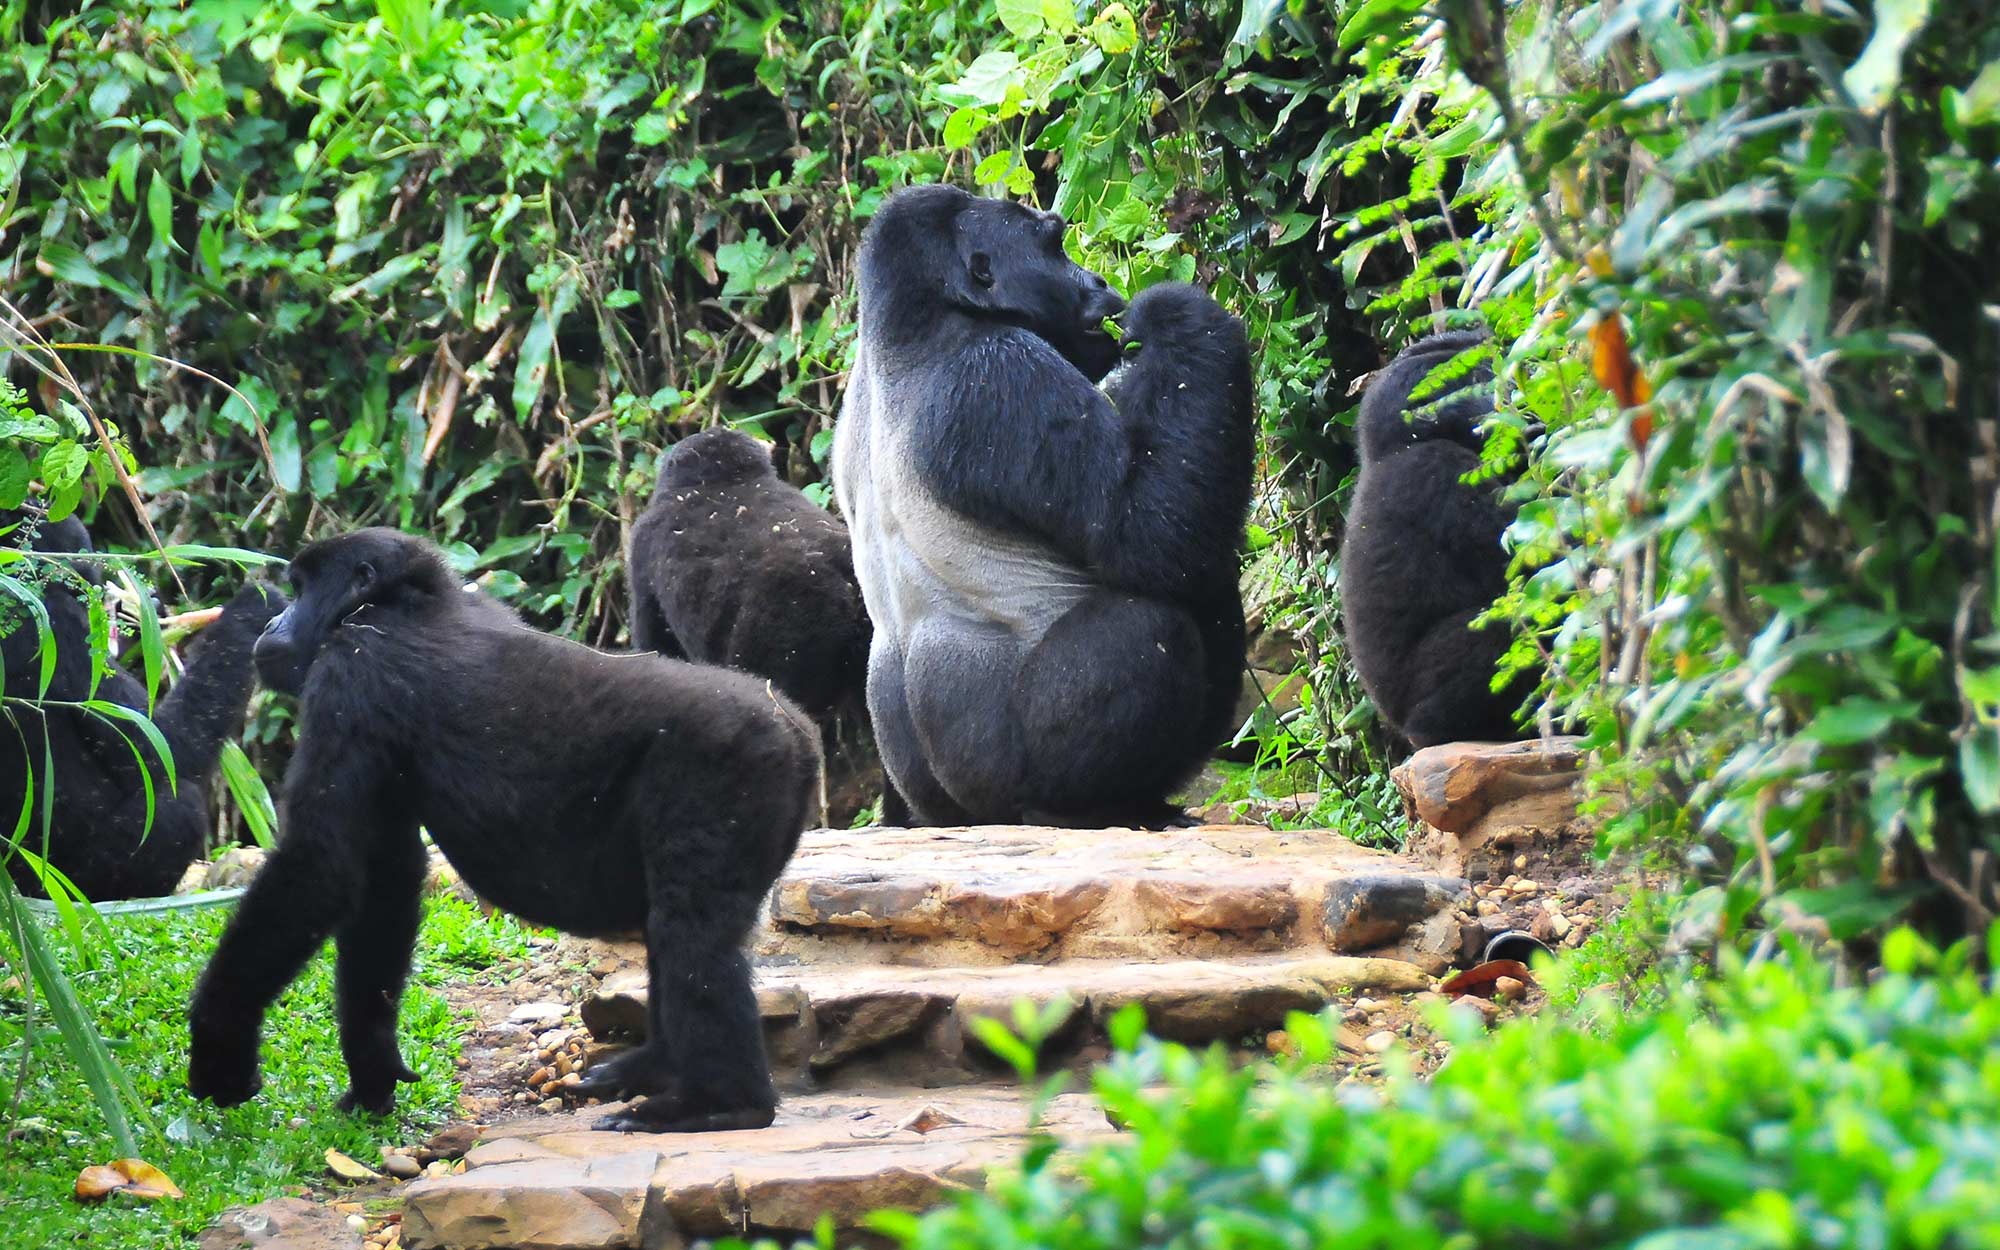 A family of mountain gorillas walks through a lodge's garden in Uganda